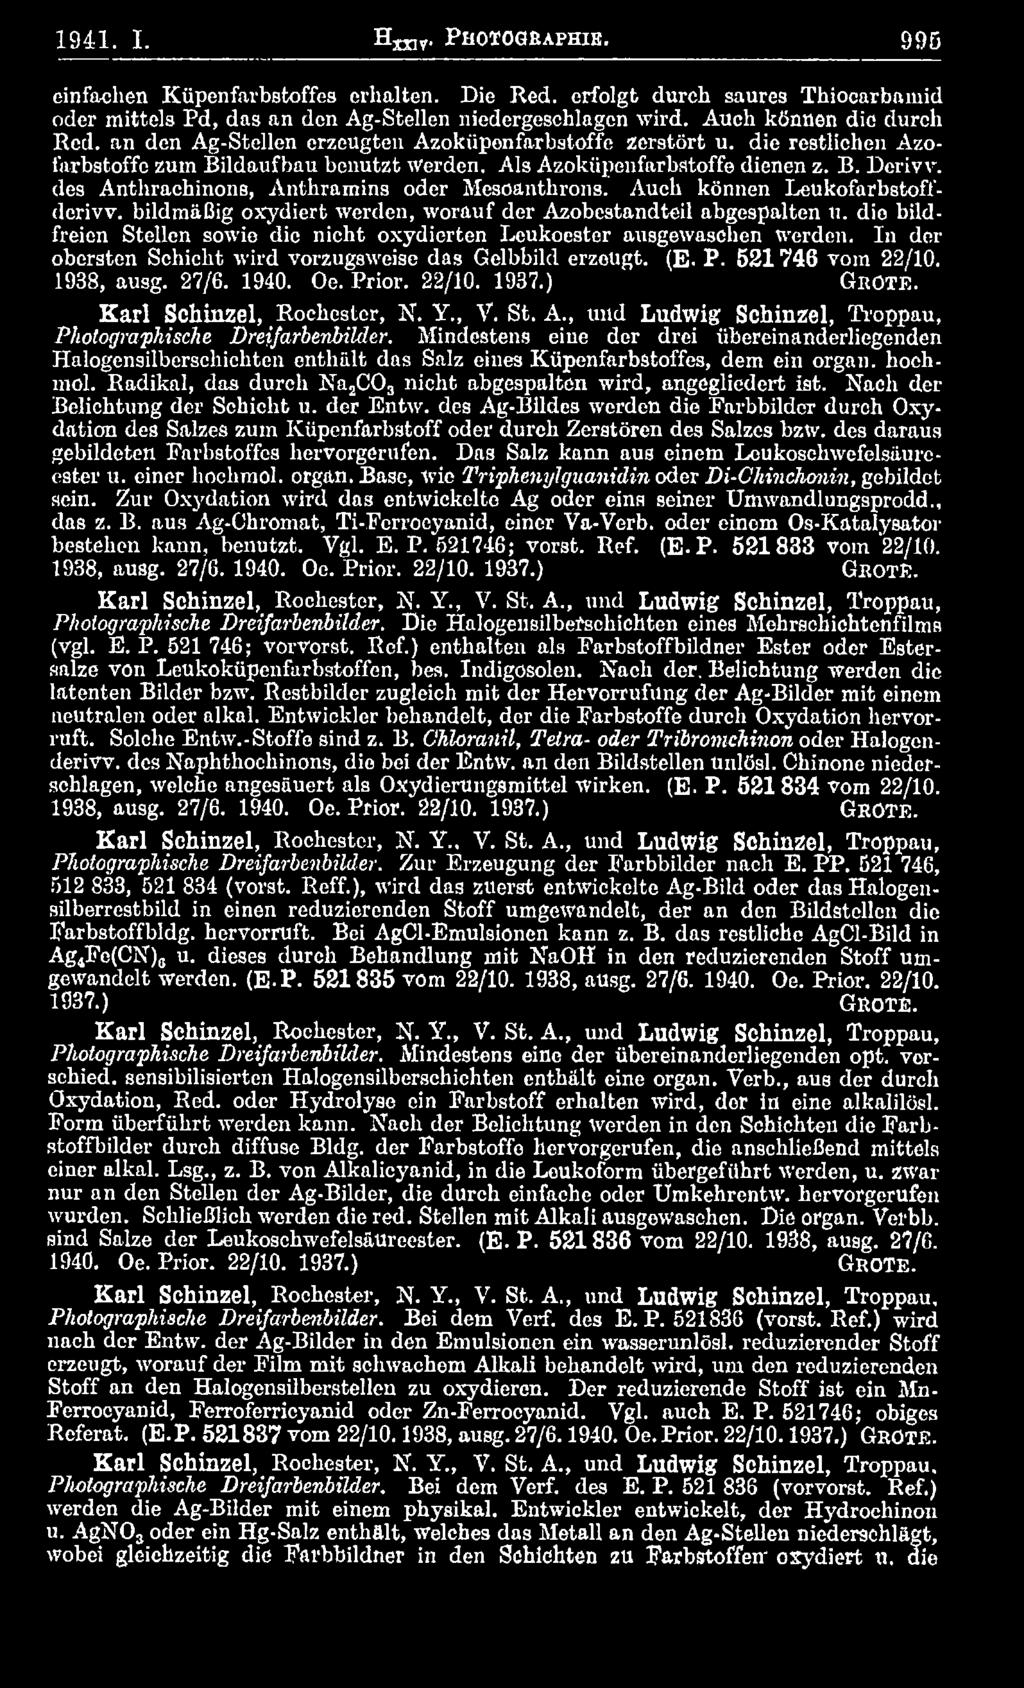 Prior. 22/10. 1937.) G r o t e. Karl Schinzel, Rockester, N. Y., V. St. A., und Ludwig Schinzel, Troppau, Photographische Dreifarbenbilder.